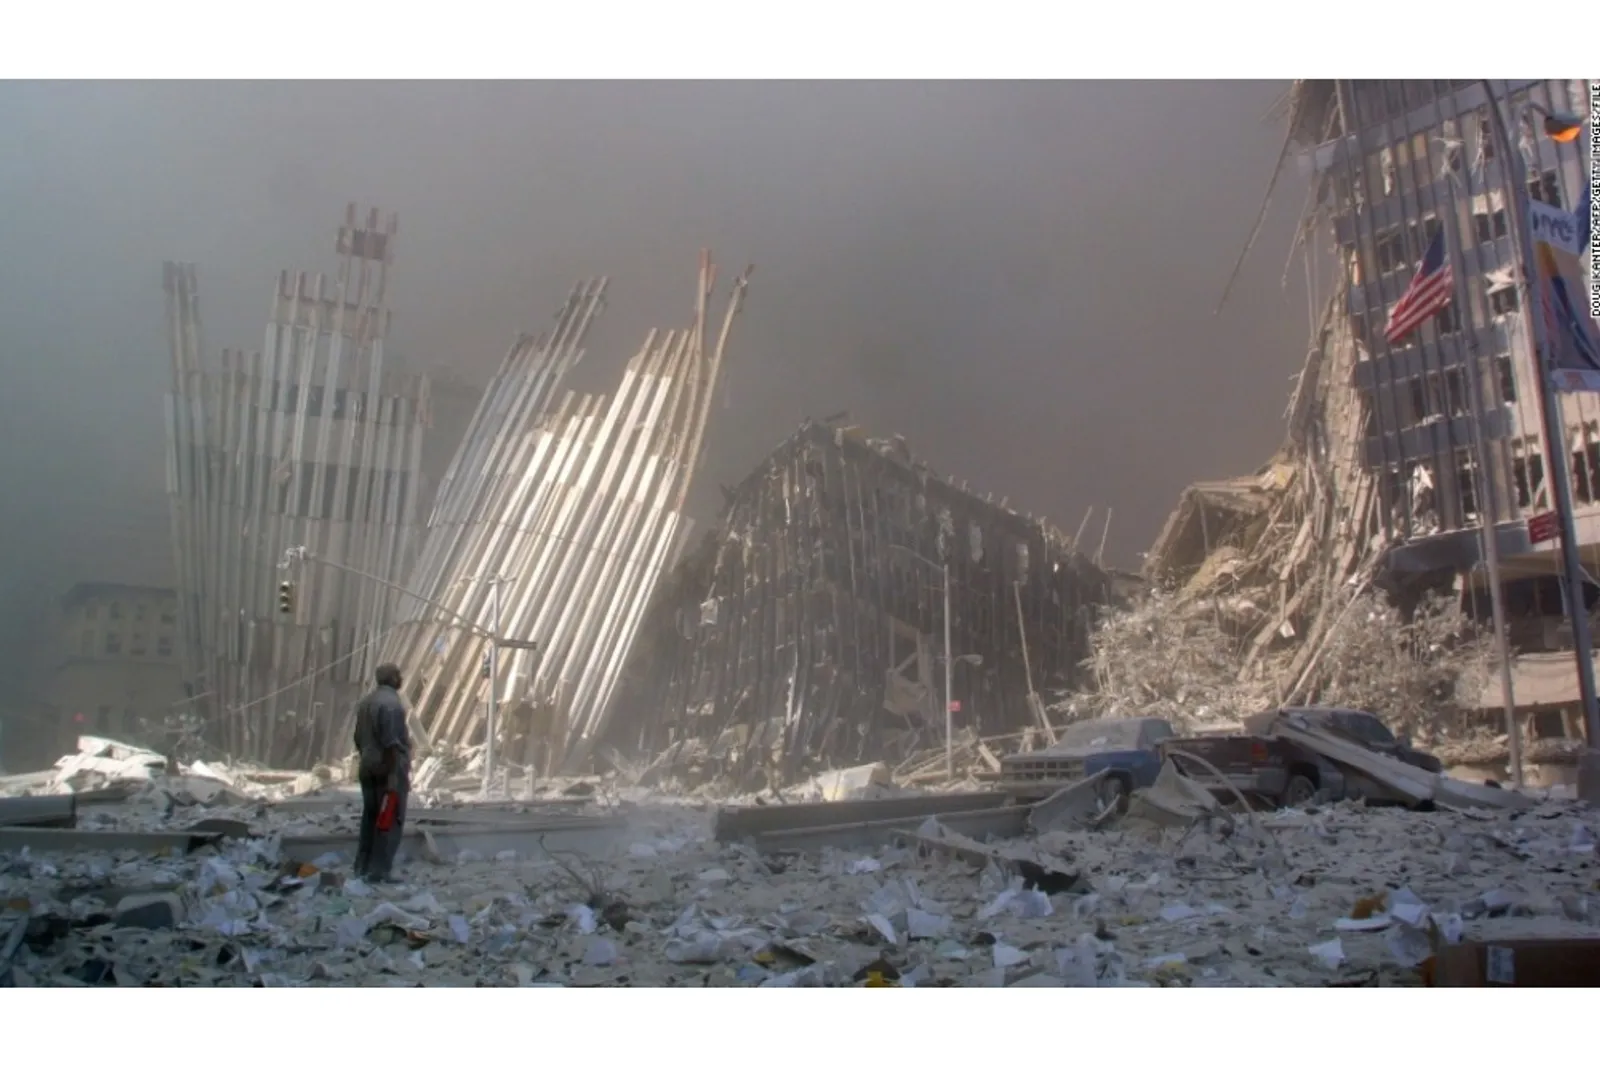 20 Tahun Berlalu, Ini Deretan Foto Paling Memorable dari Kejadian 9/11